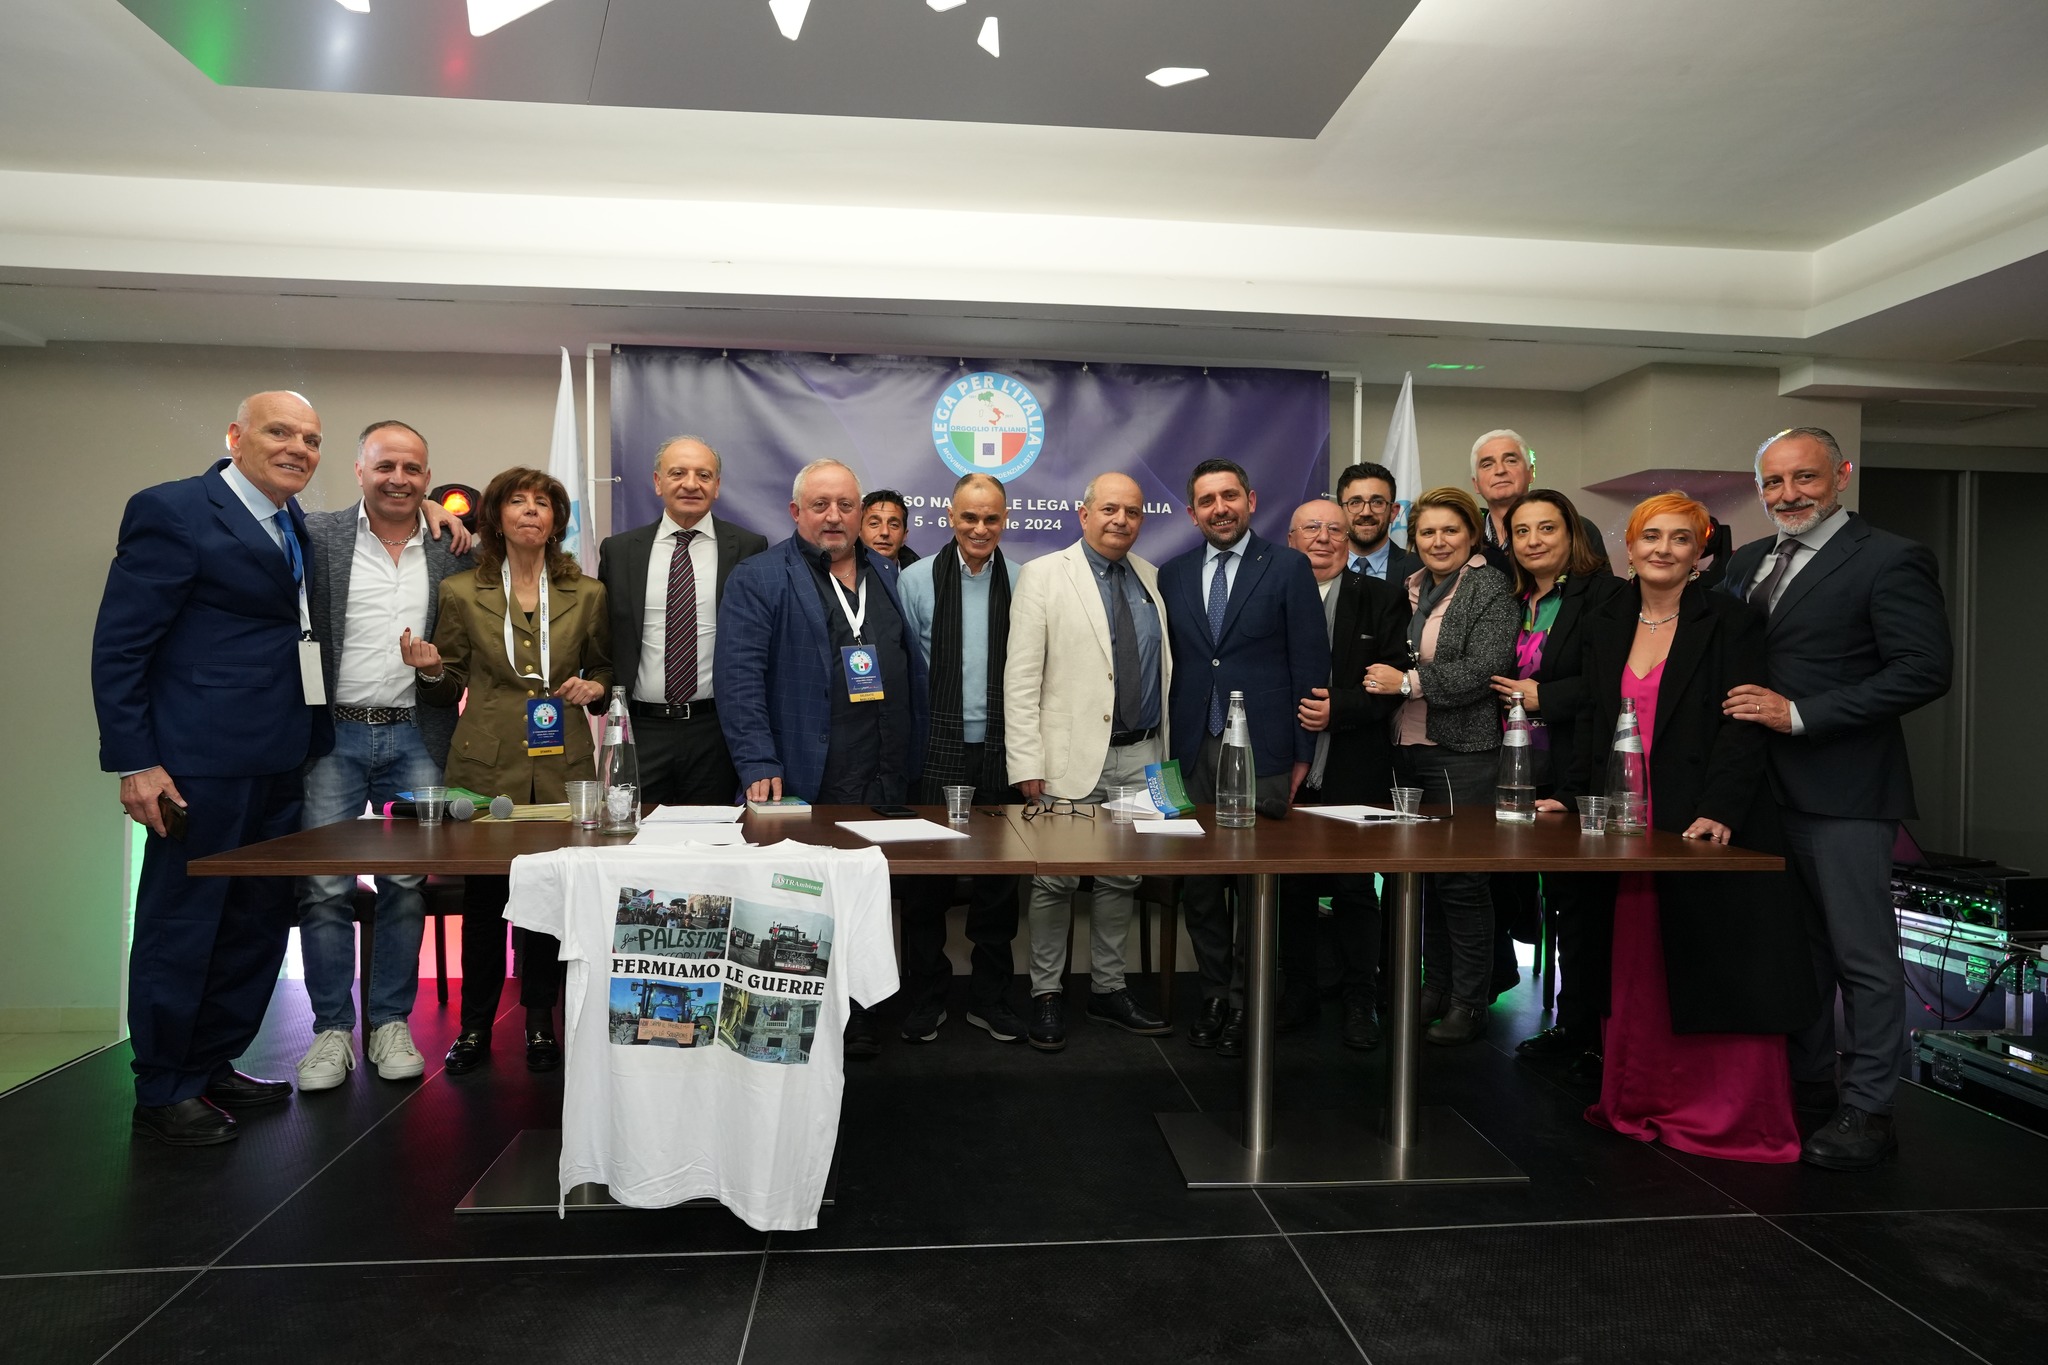 Mercato San Severino: 3° Congresso nazionale della Lega per l’Italia tra mondo imprenditoriale e sviluppo del Paese